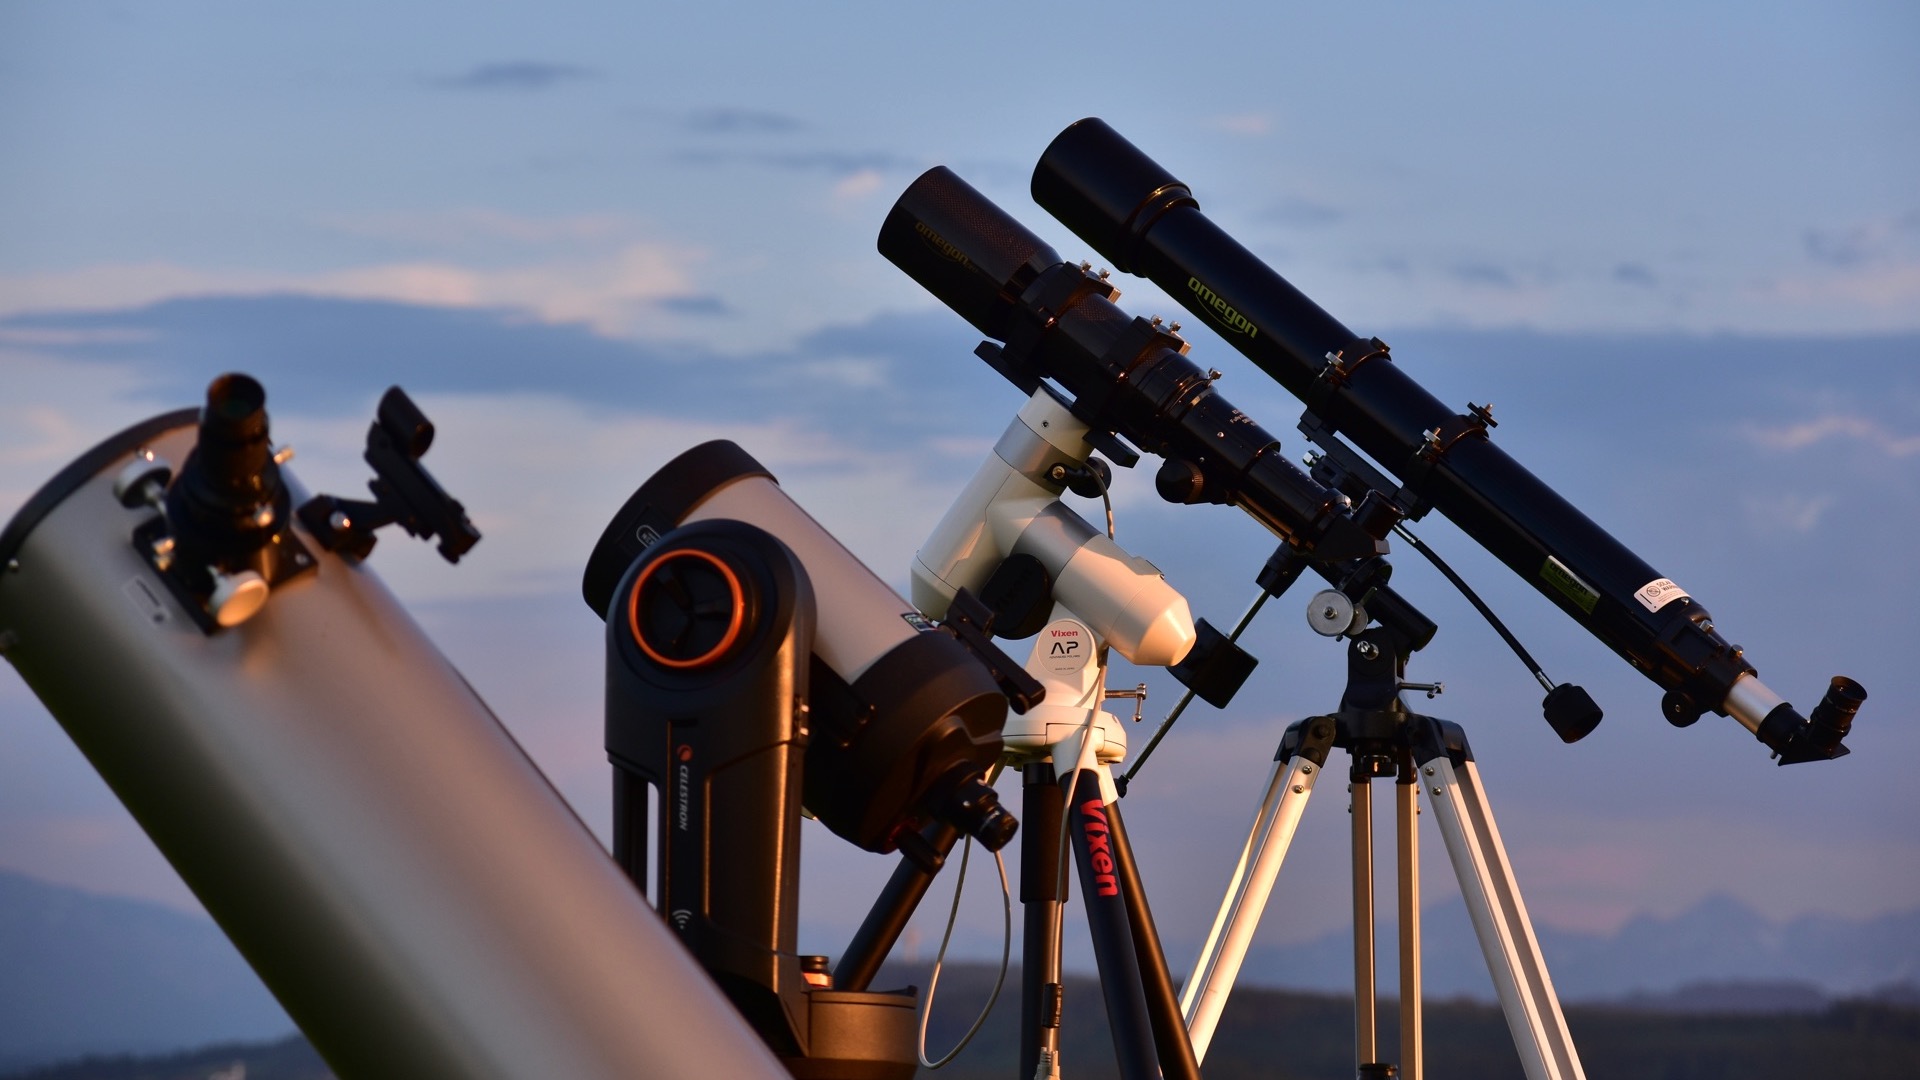 Os principiantes da astronomia ficam confusos quando chega o momento de escolher um telescópio. Os especialistas têm todo o gosto em ajudar! 